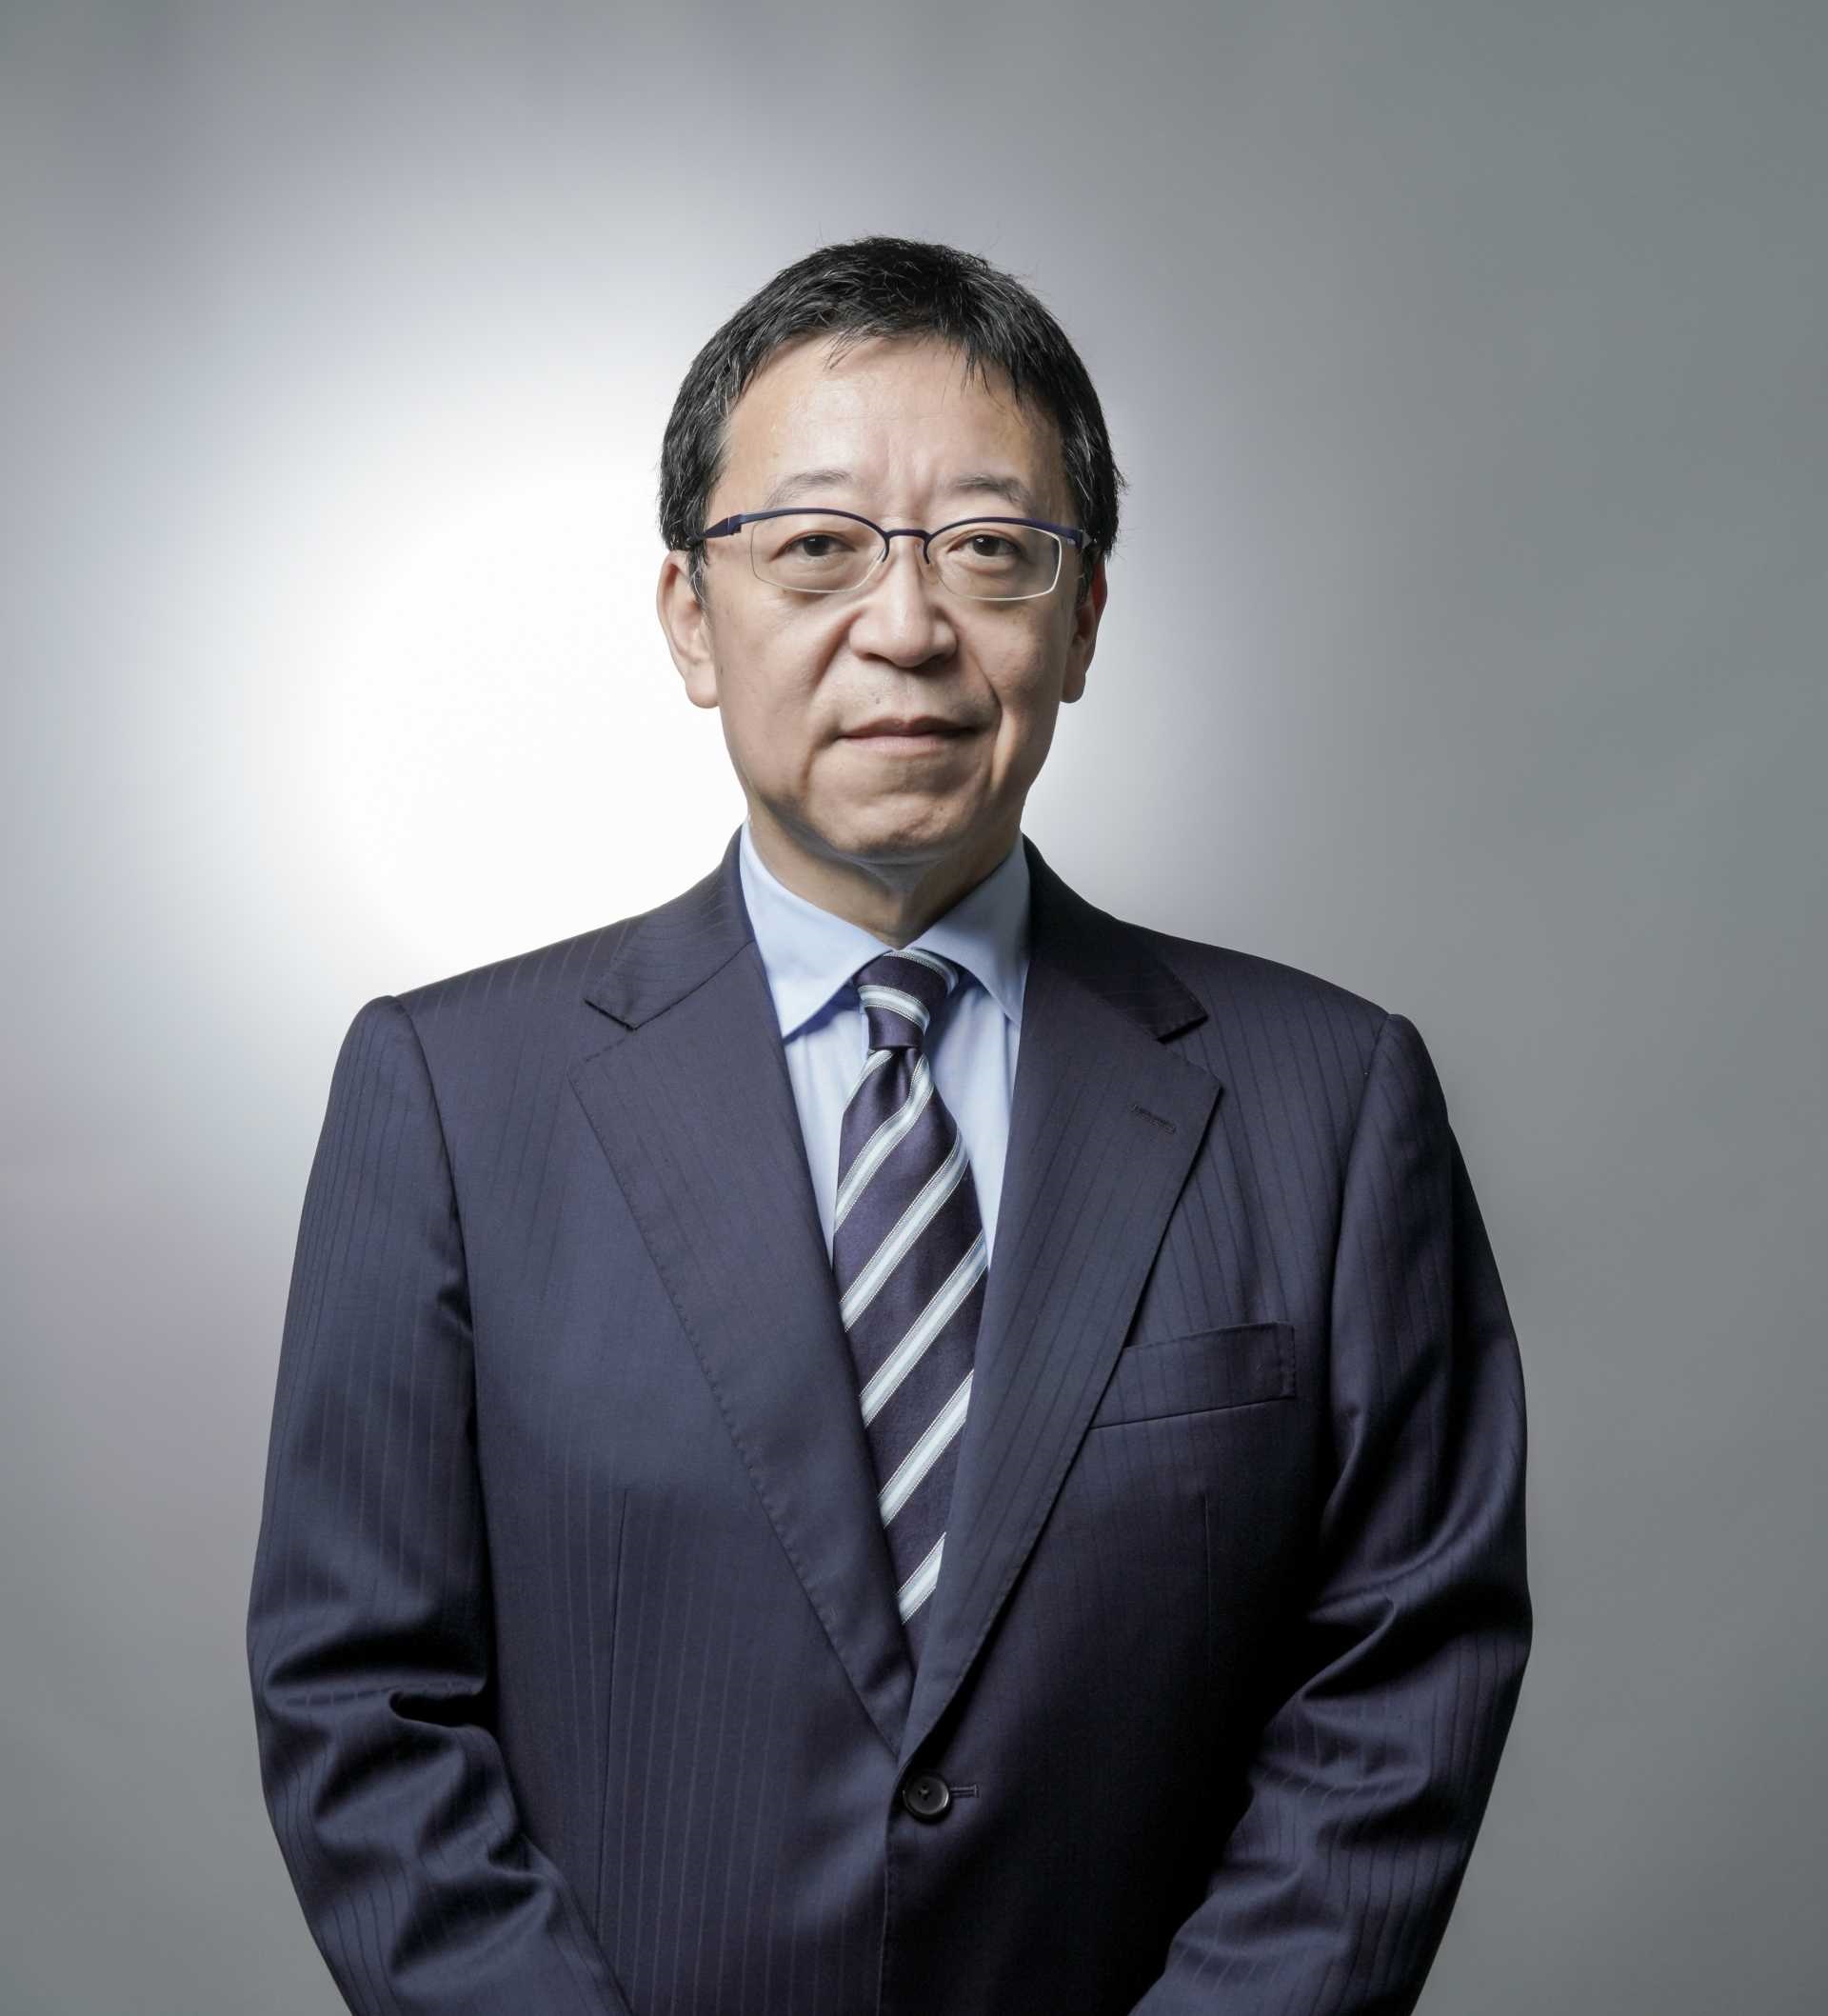 Mr. Tsuneo “Nabe” Watanabe